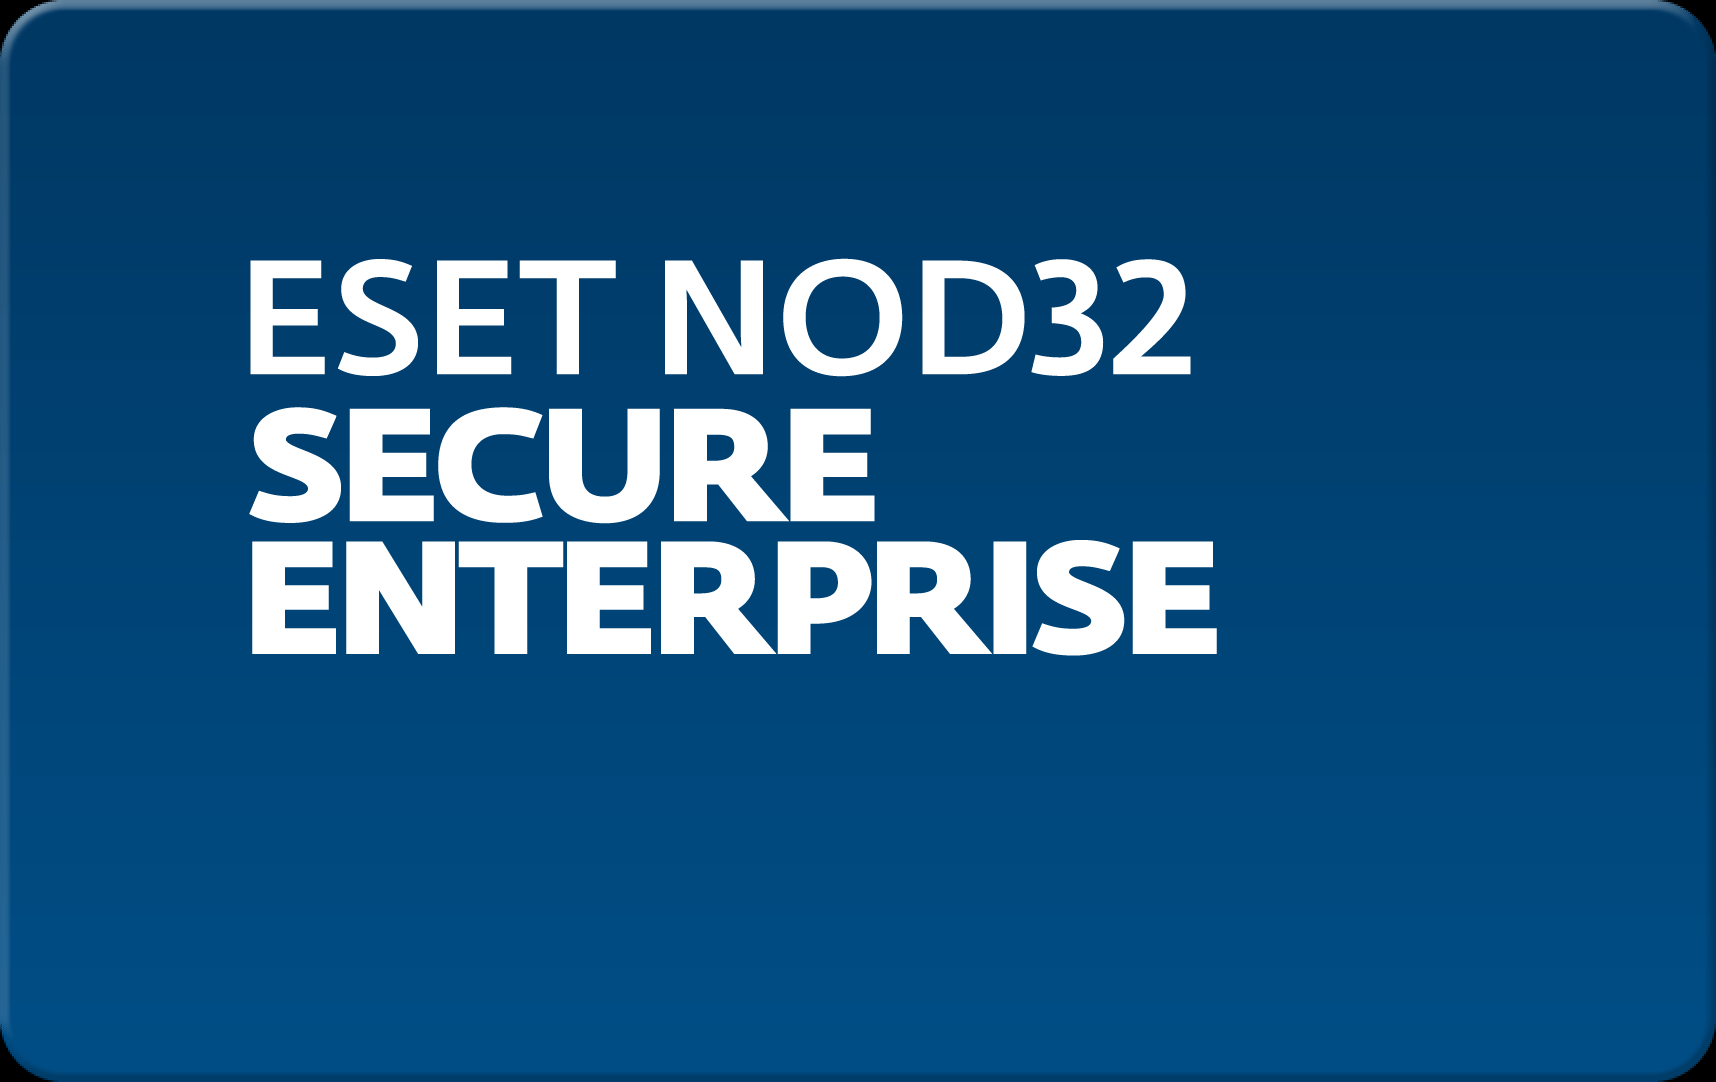        Eset NOD32 Secure Enterprise  152  NOD32-ESE-NS-1-152  #1